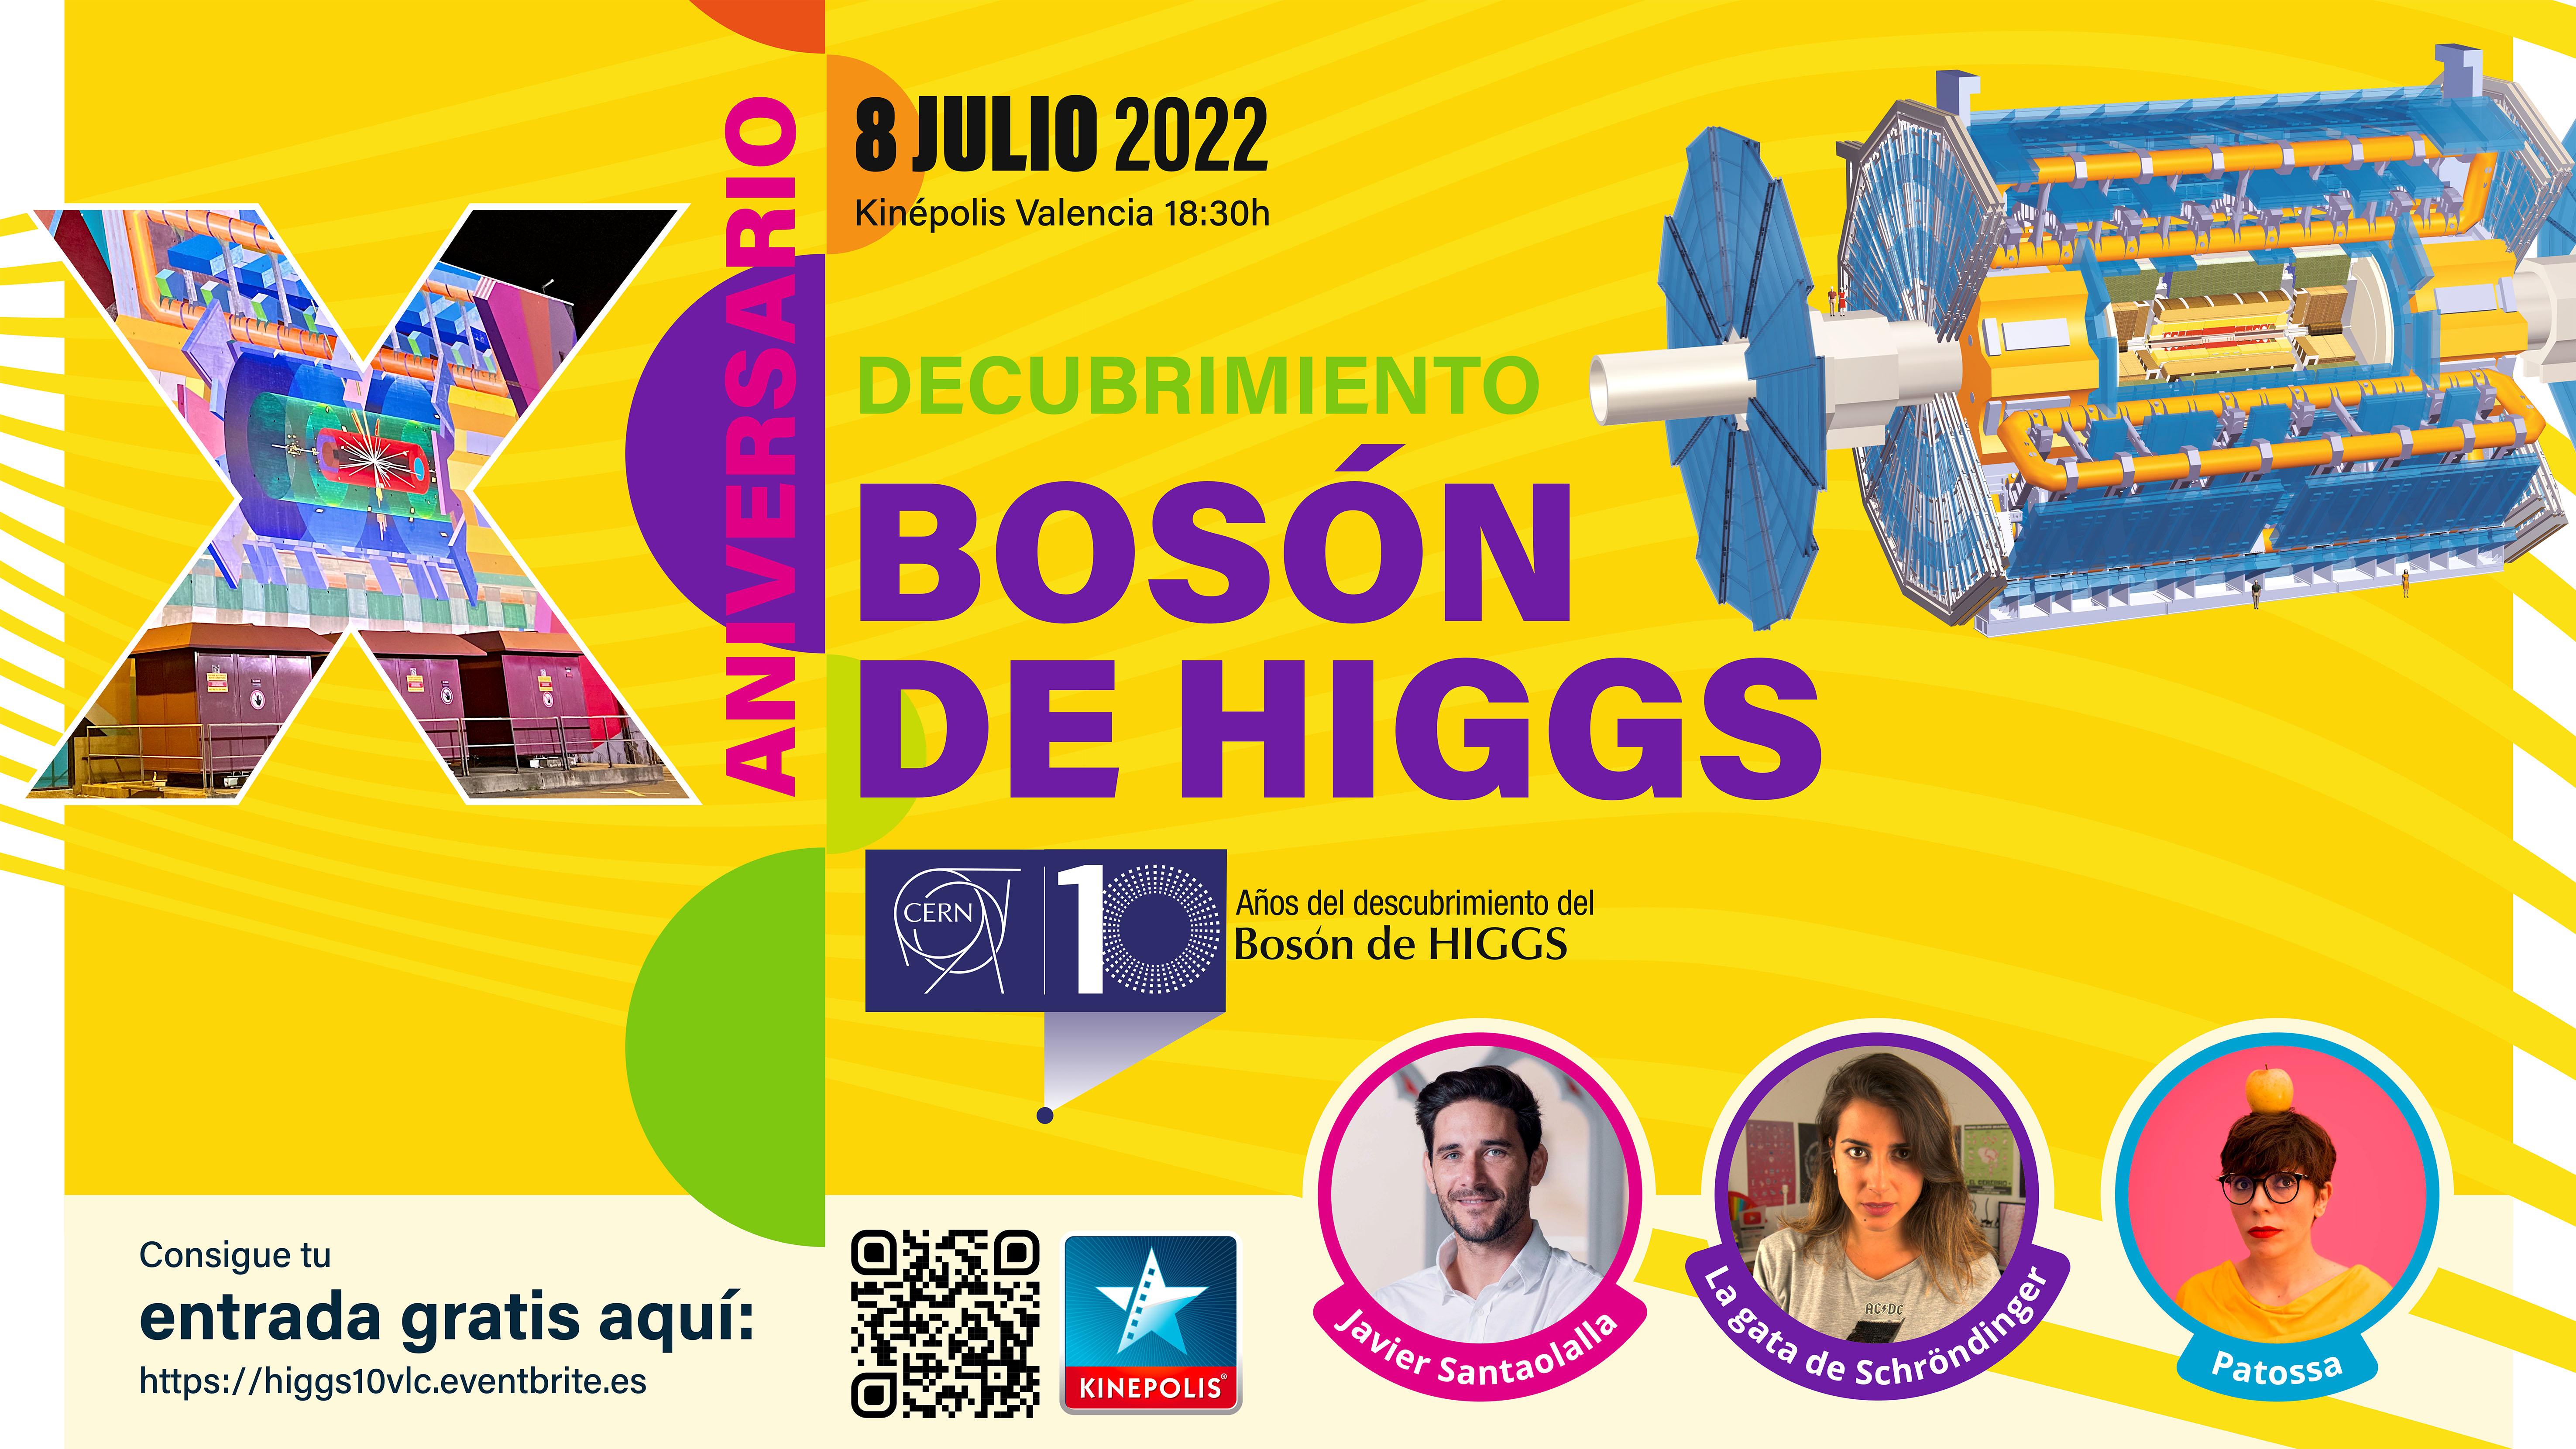 IFIC | Celebración del 10º aniversario del descubrimiento del bosón de Higgs en València